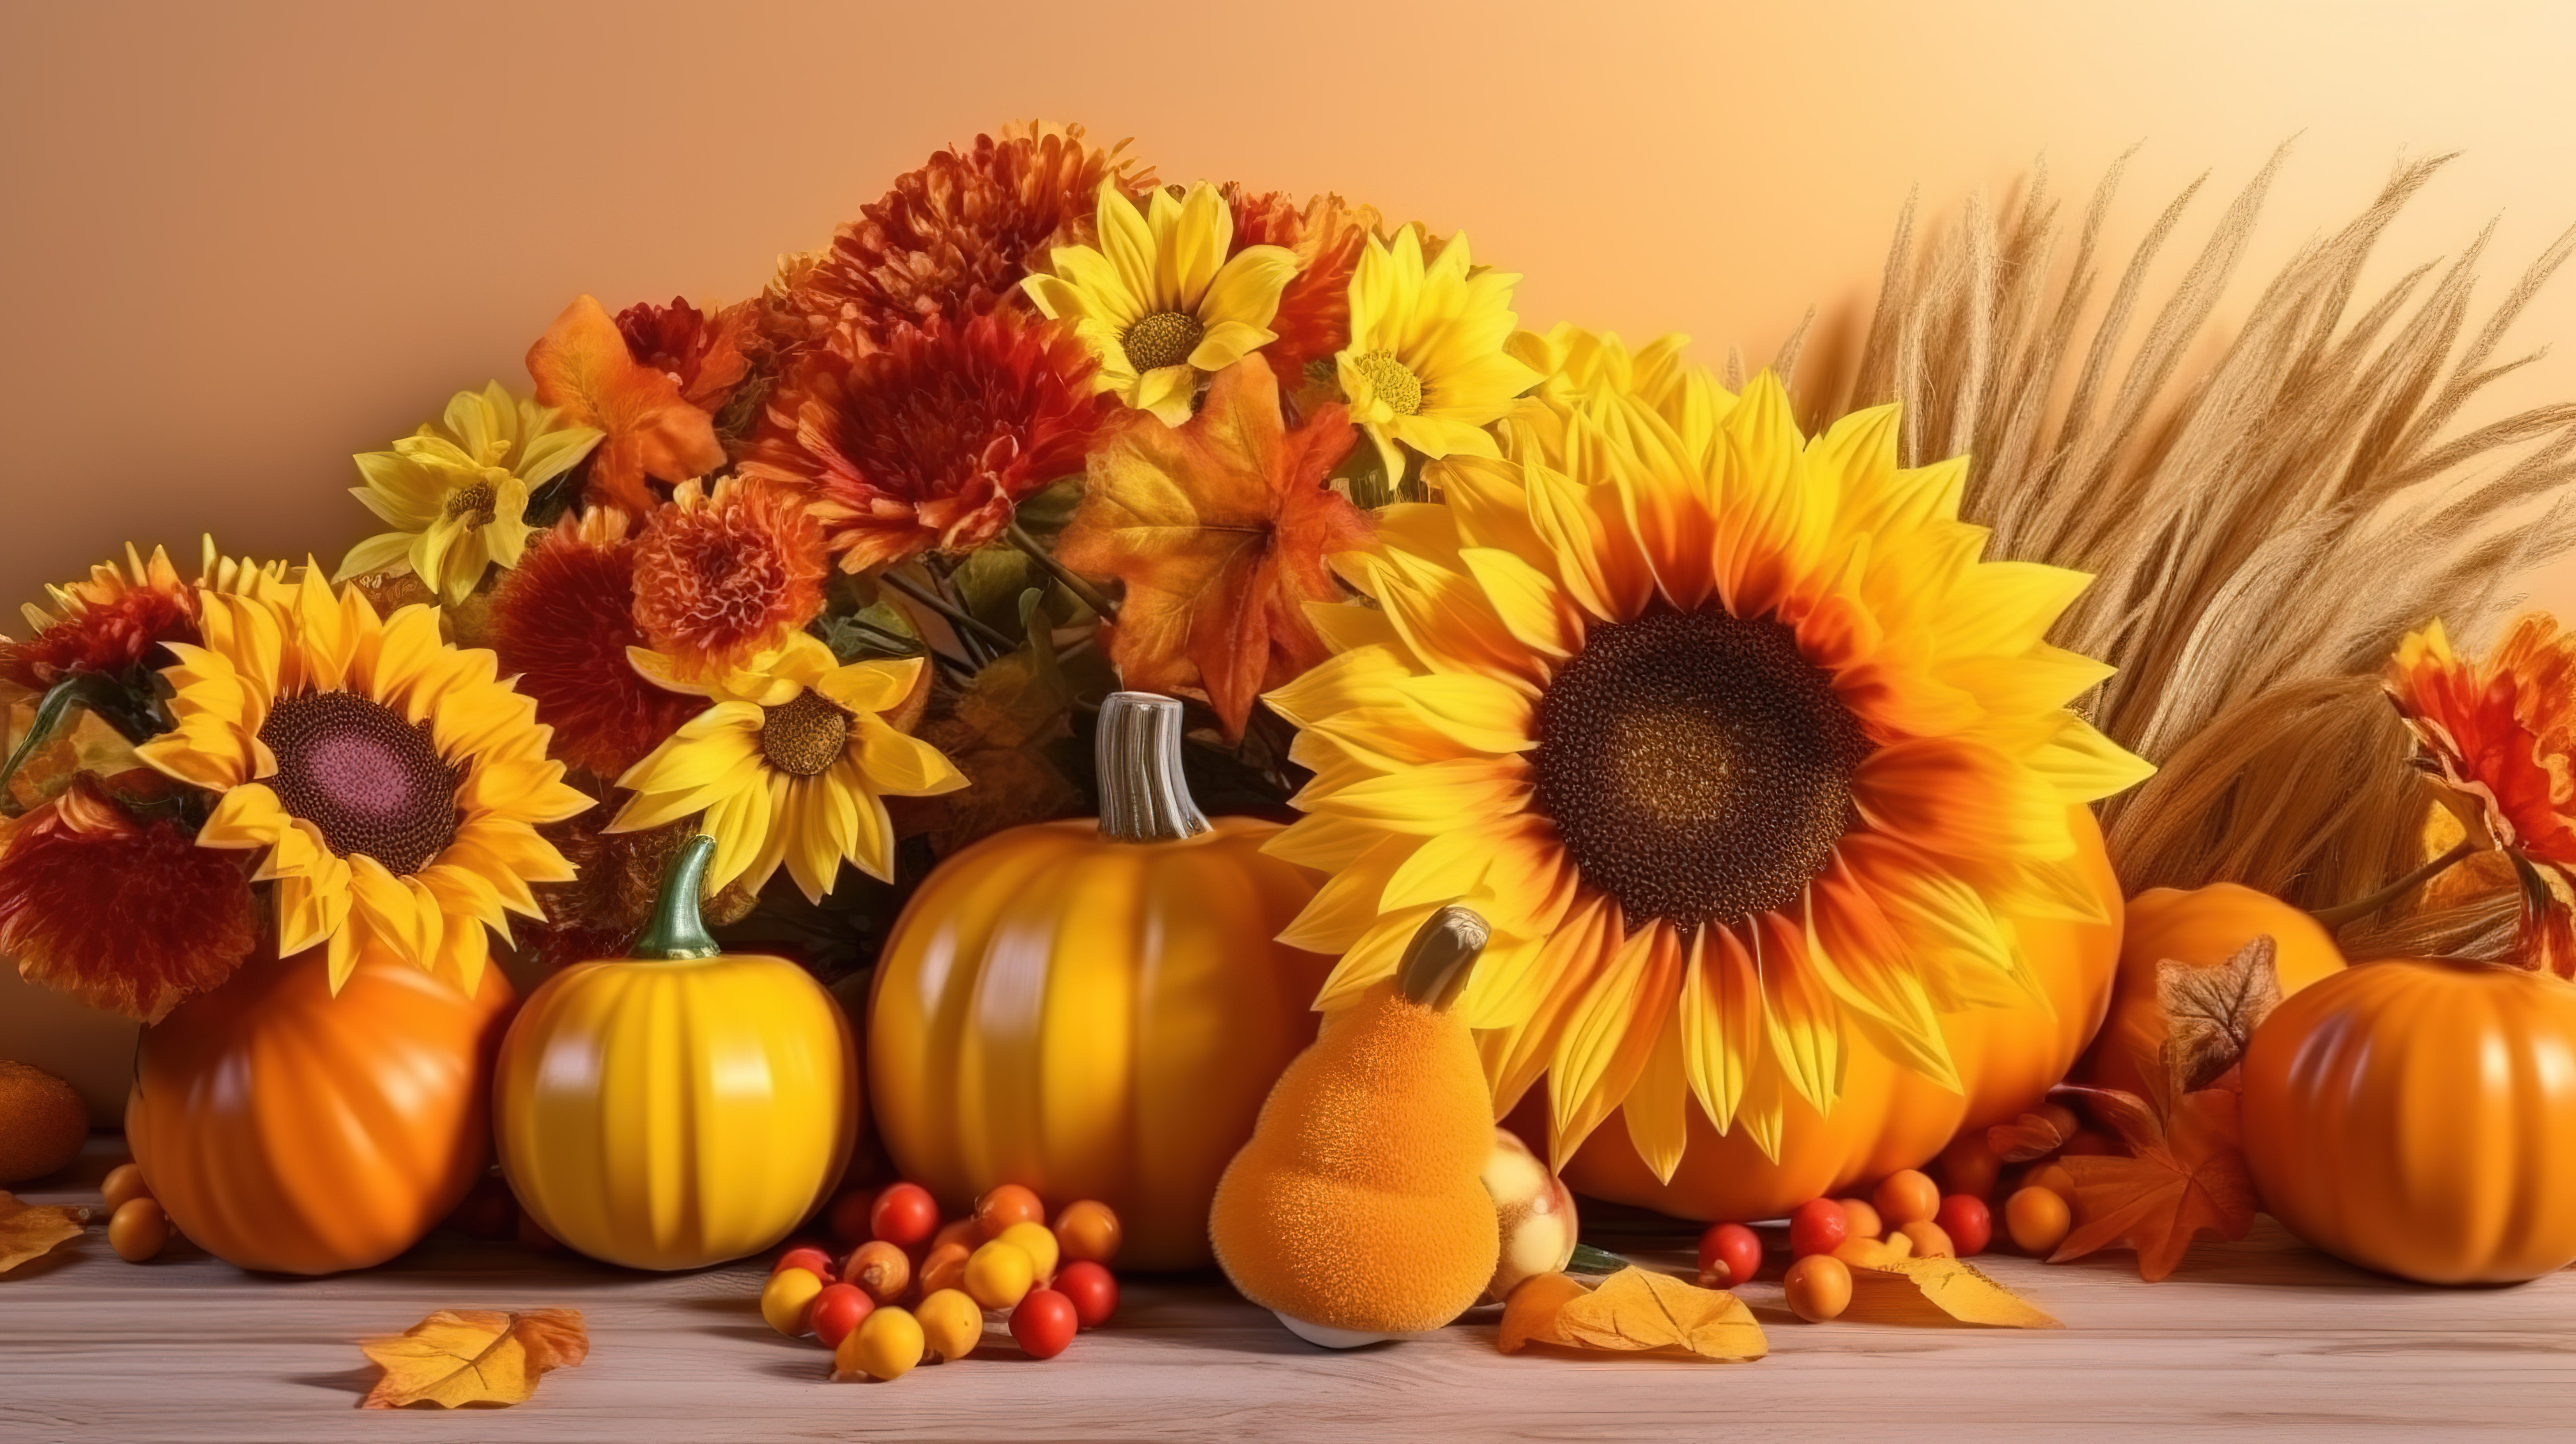 秋季问候背景，以令人惊叹的向日葵和丰满的南瓜为特色 3d图片